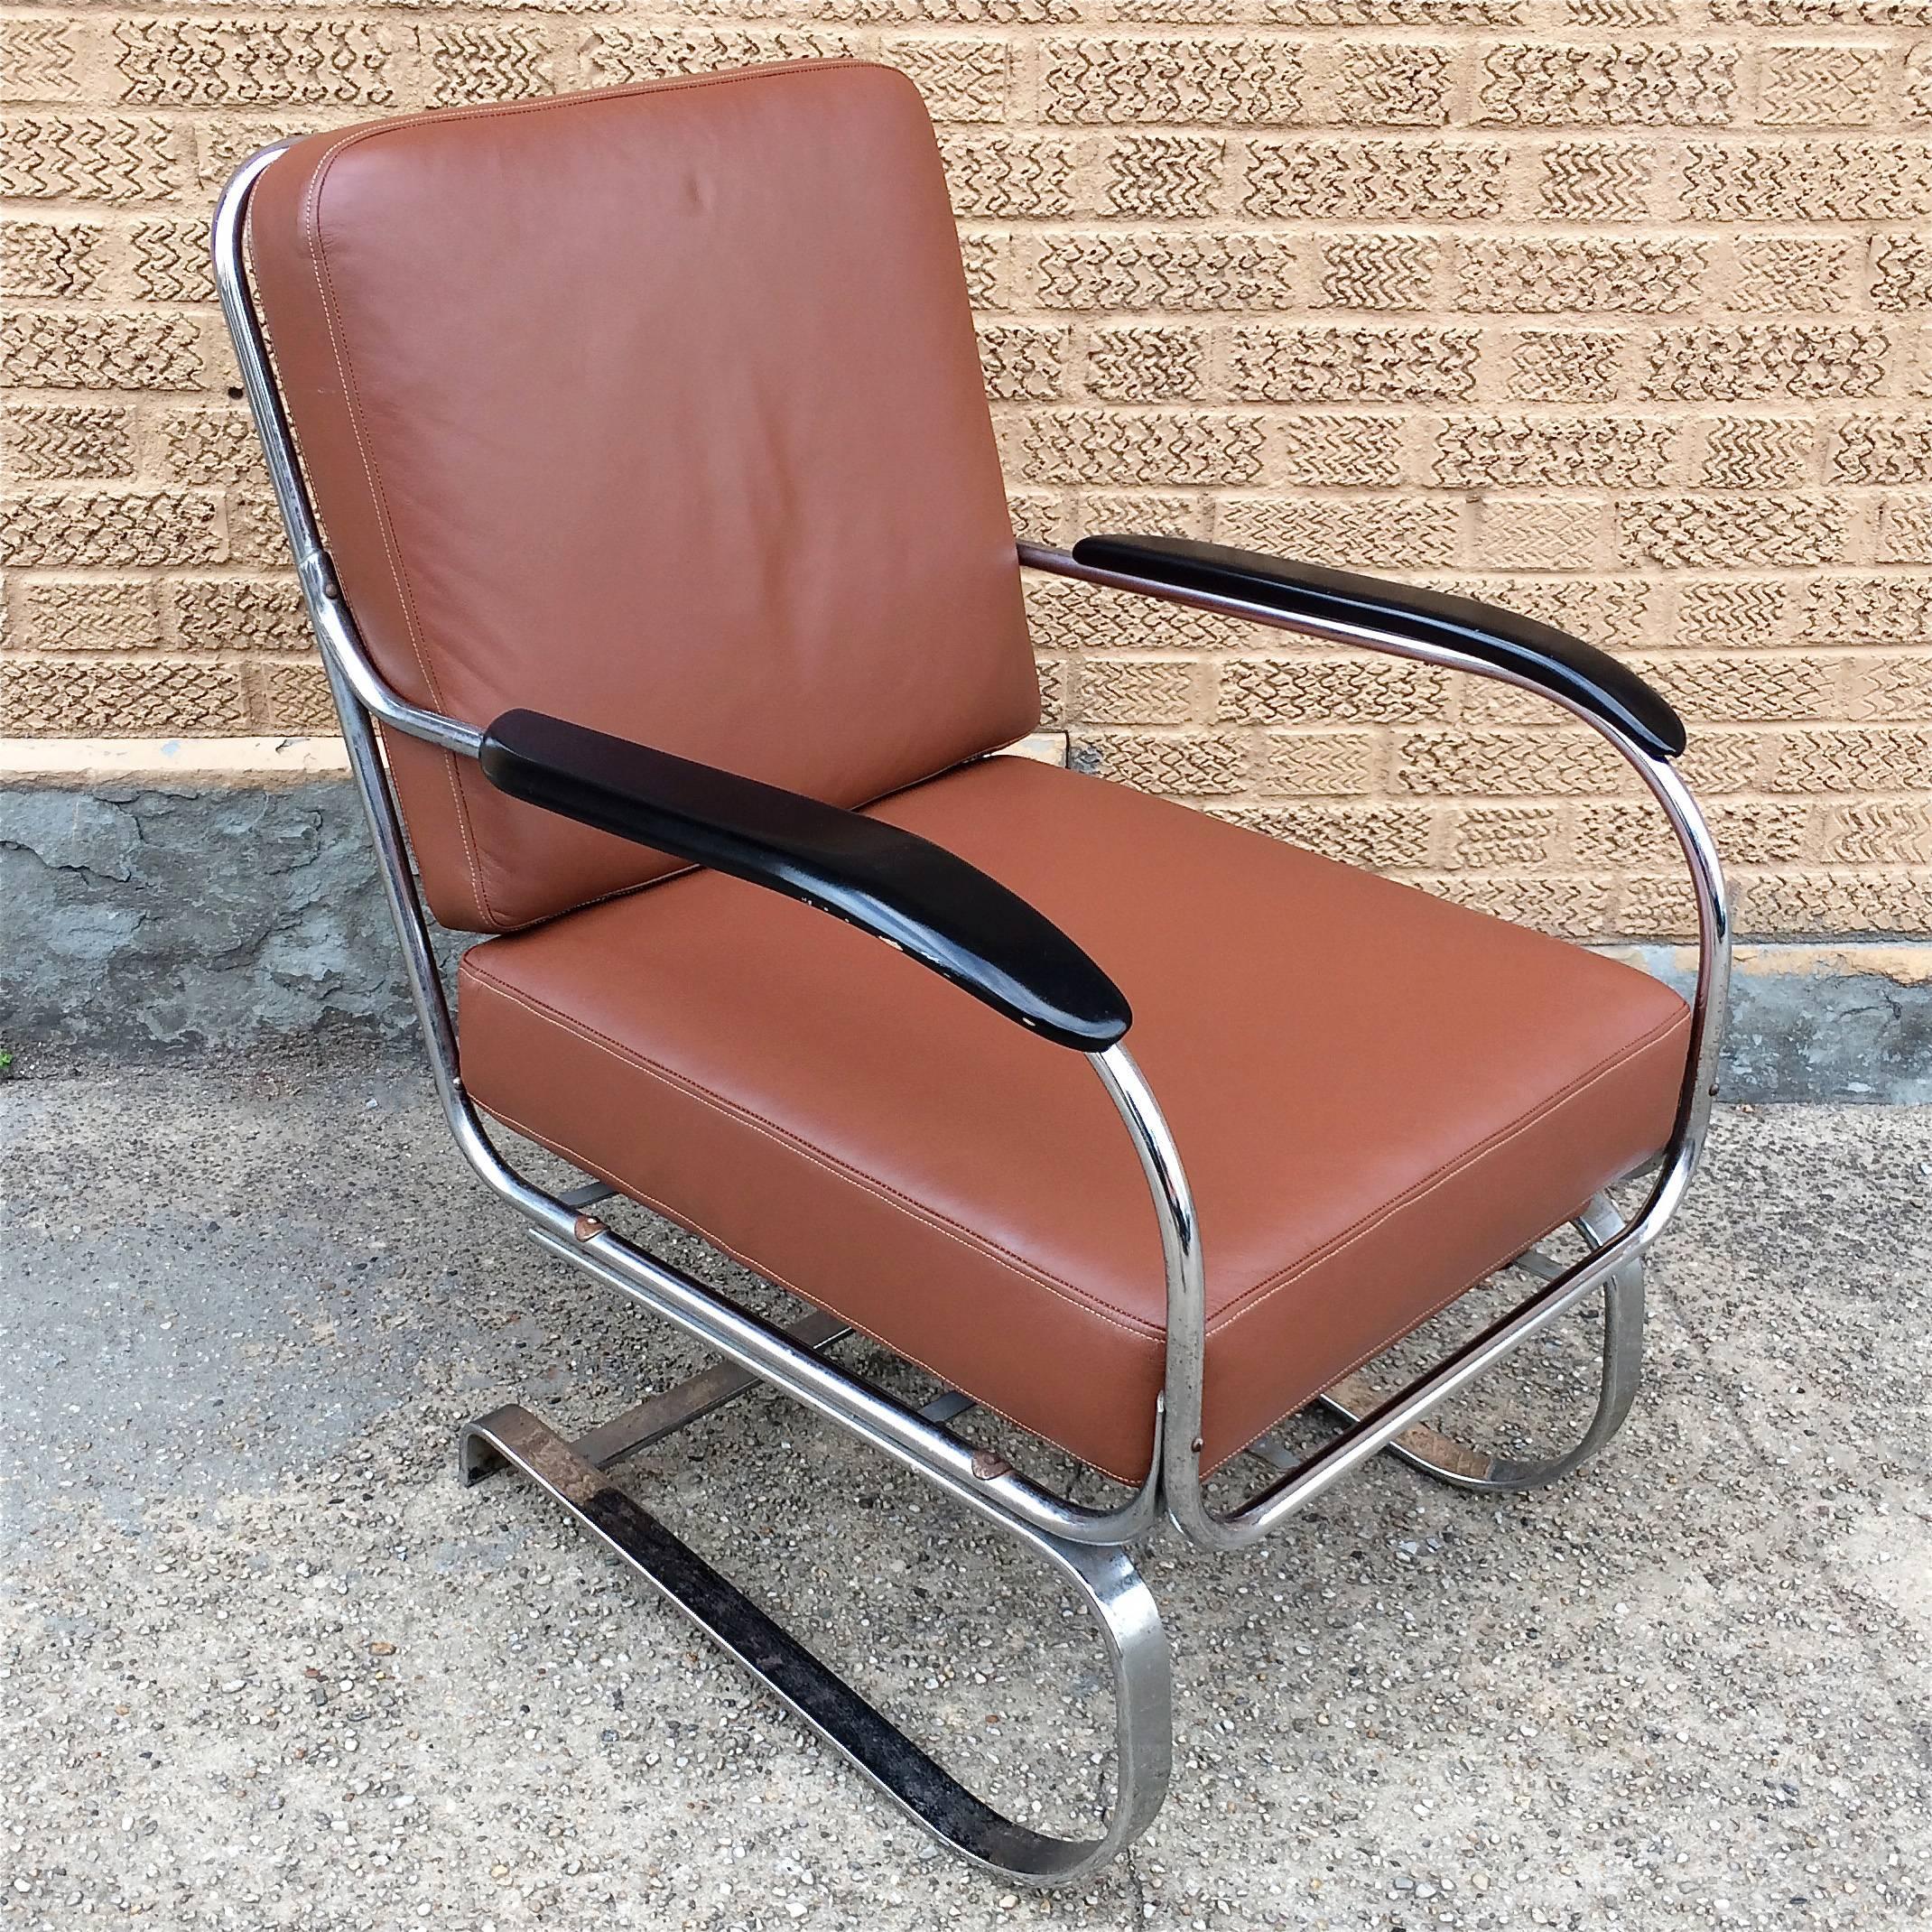 1940s, Machin Age, chaise longue par KEM Weber pour Lloyds avec cantilever, structure tubulaire chromée avec accoudoirs en bois laqué et coussins en cuir nouvellement rembourrés.